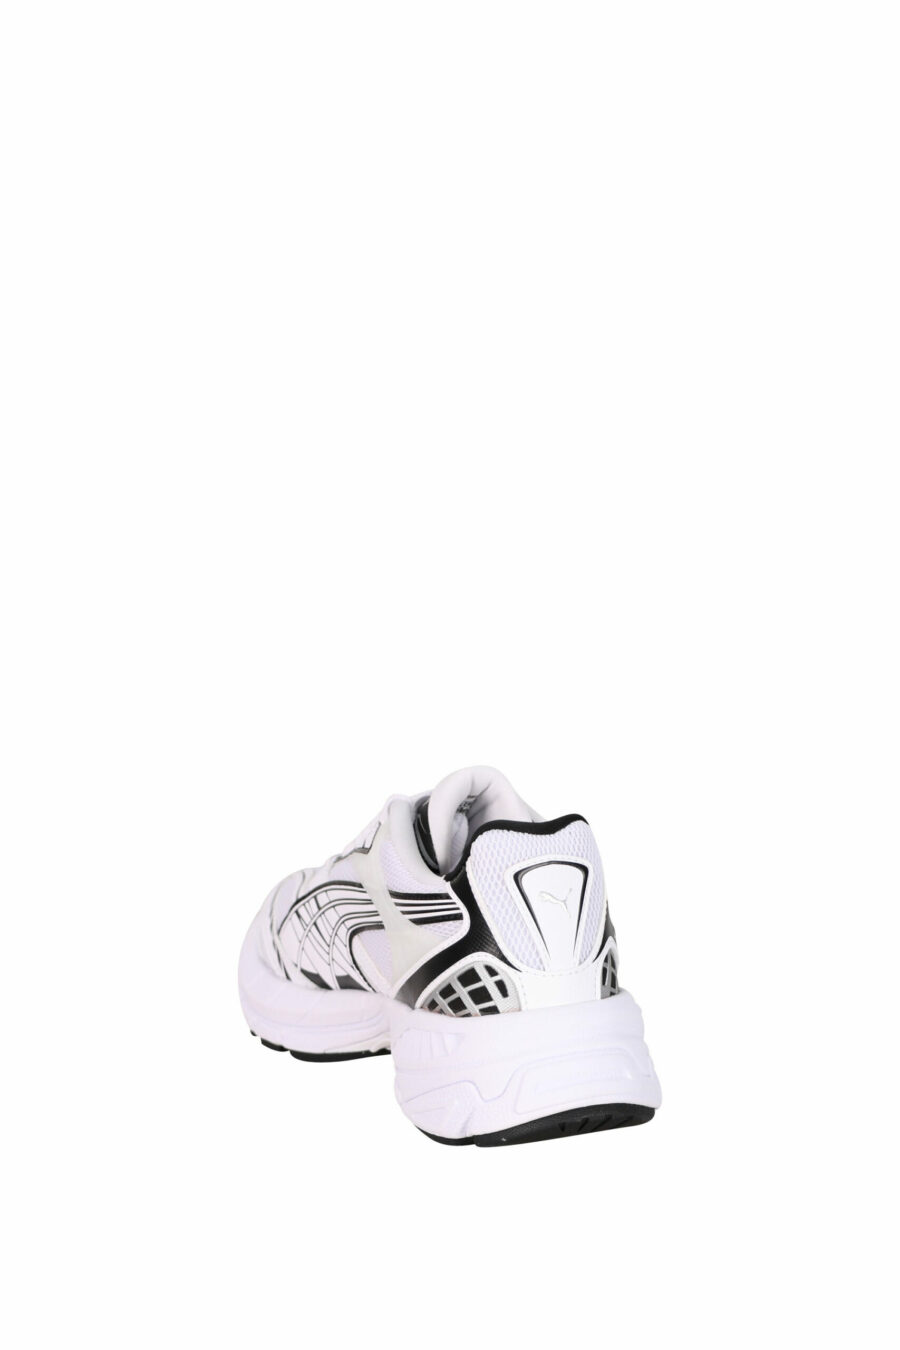 Zapatillas blancas "velophasis" con logo - 4099686482466 3 scaled